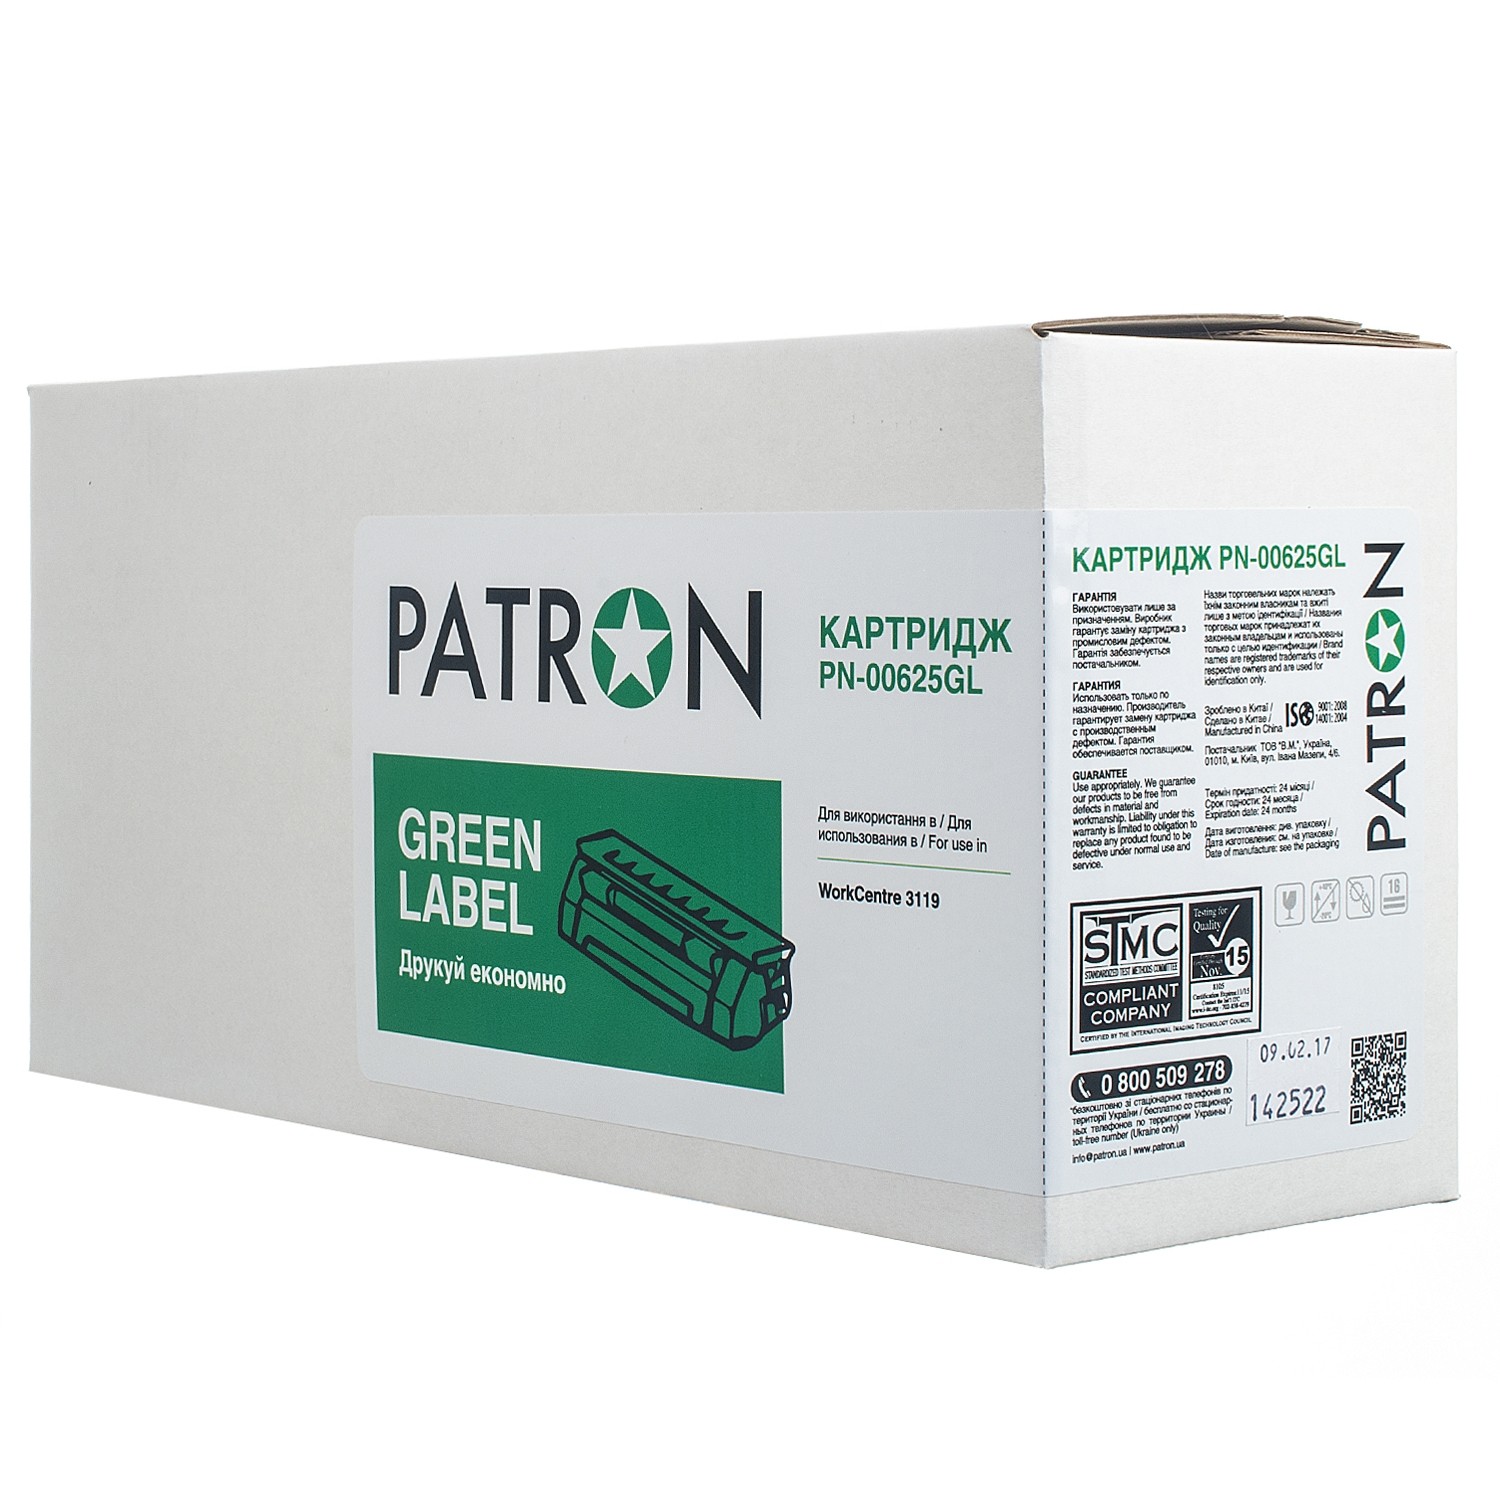 КАРТРИДЖ XEROX 013R00625 (PN-00625GL) (WC 3119) PATRON GREEN Label